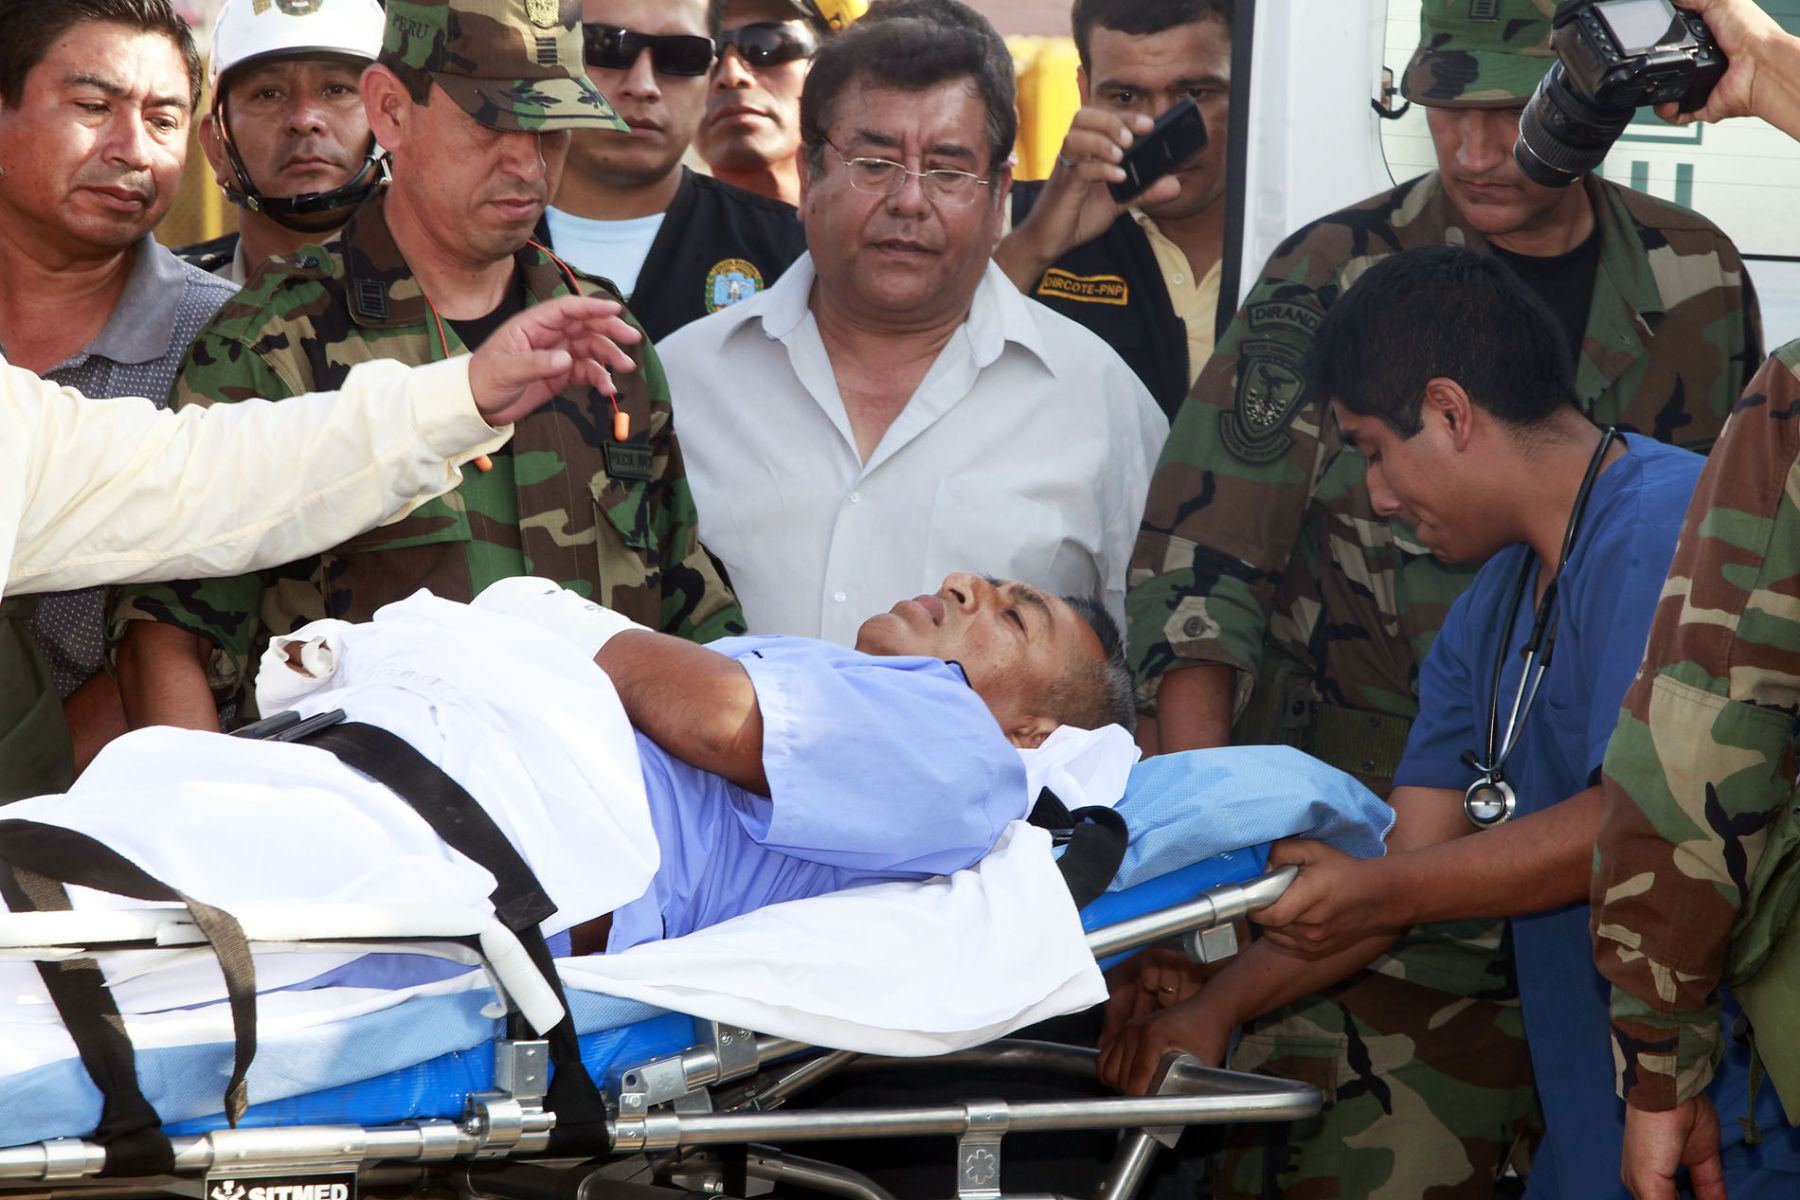 Llega herido subversivo José Eleuterio Flores Hala, alias camarada "Artemio". ANDINA/Luis Iparraguirre